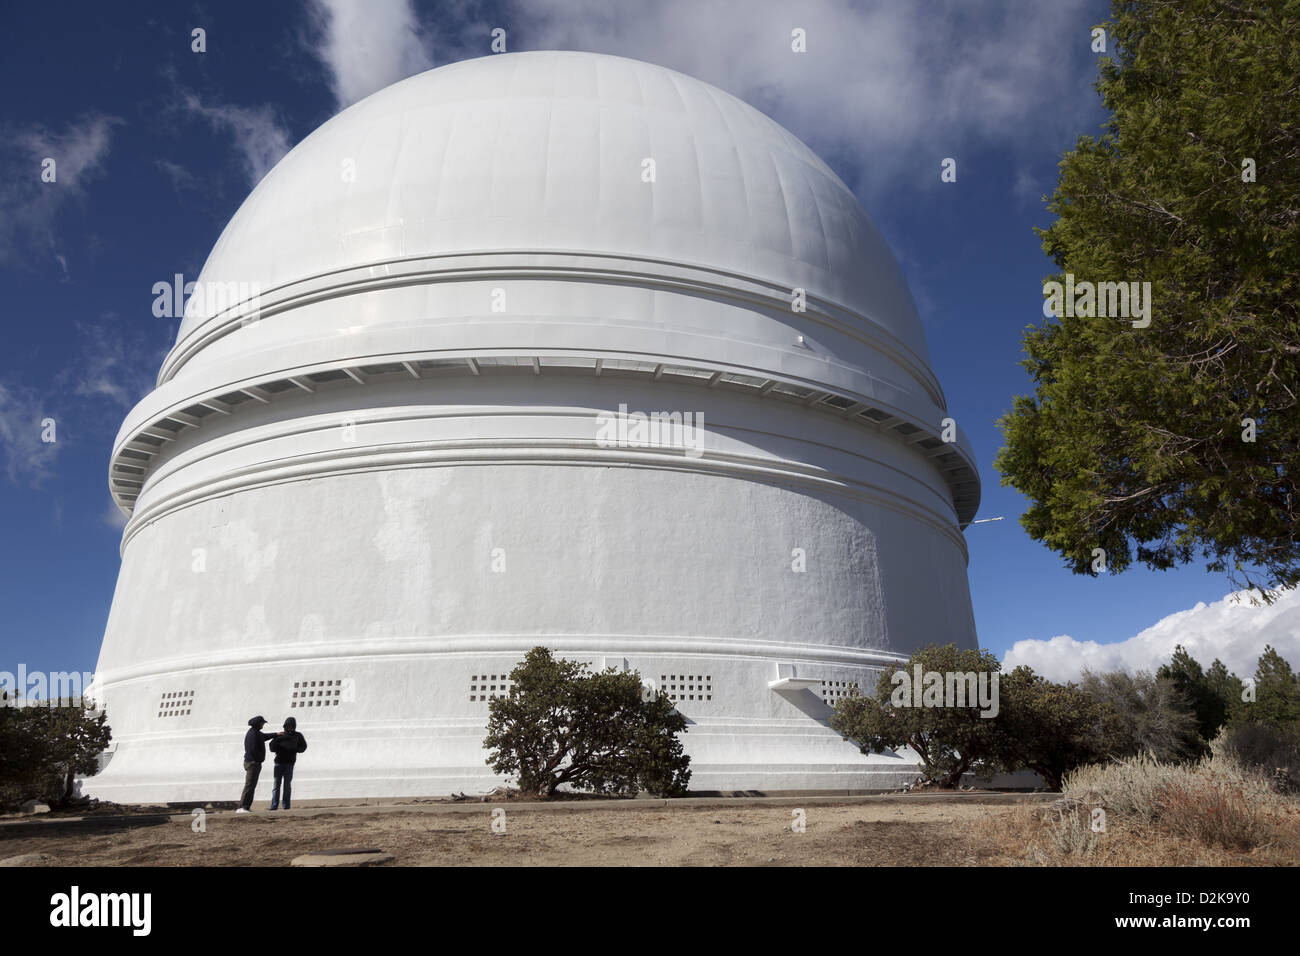 Molto grande cupola bianca del Palomar osservatorio un osservatorio  astronomico situato nella contea di San Diego, California Foto stock - Alamy